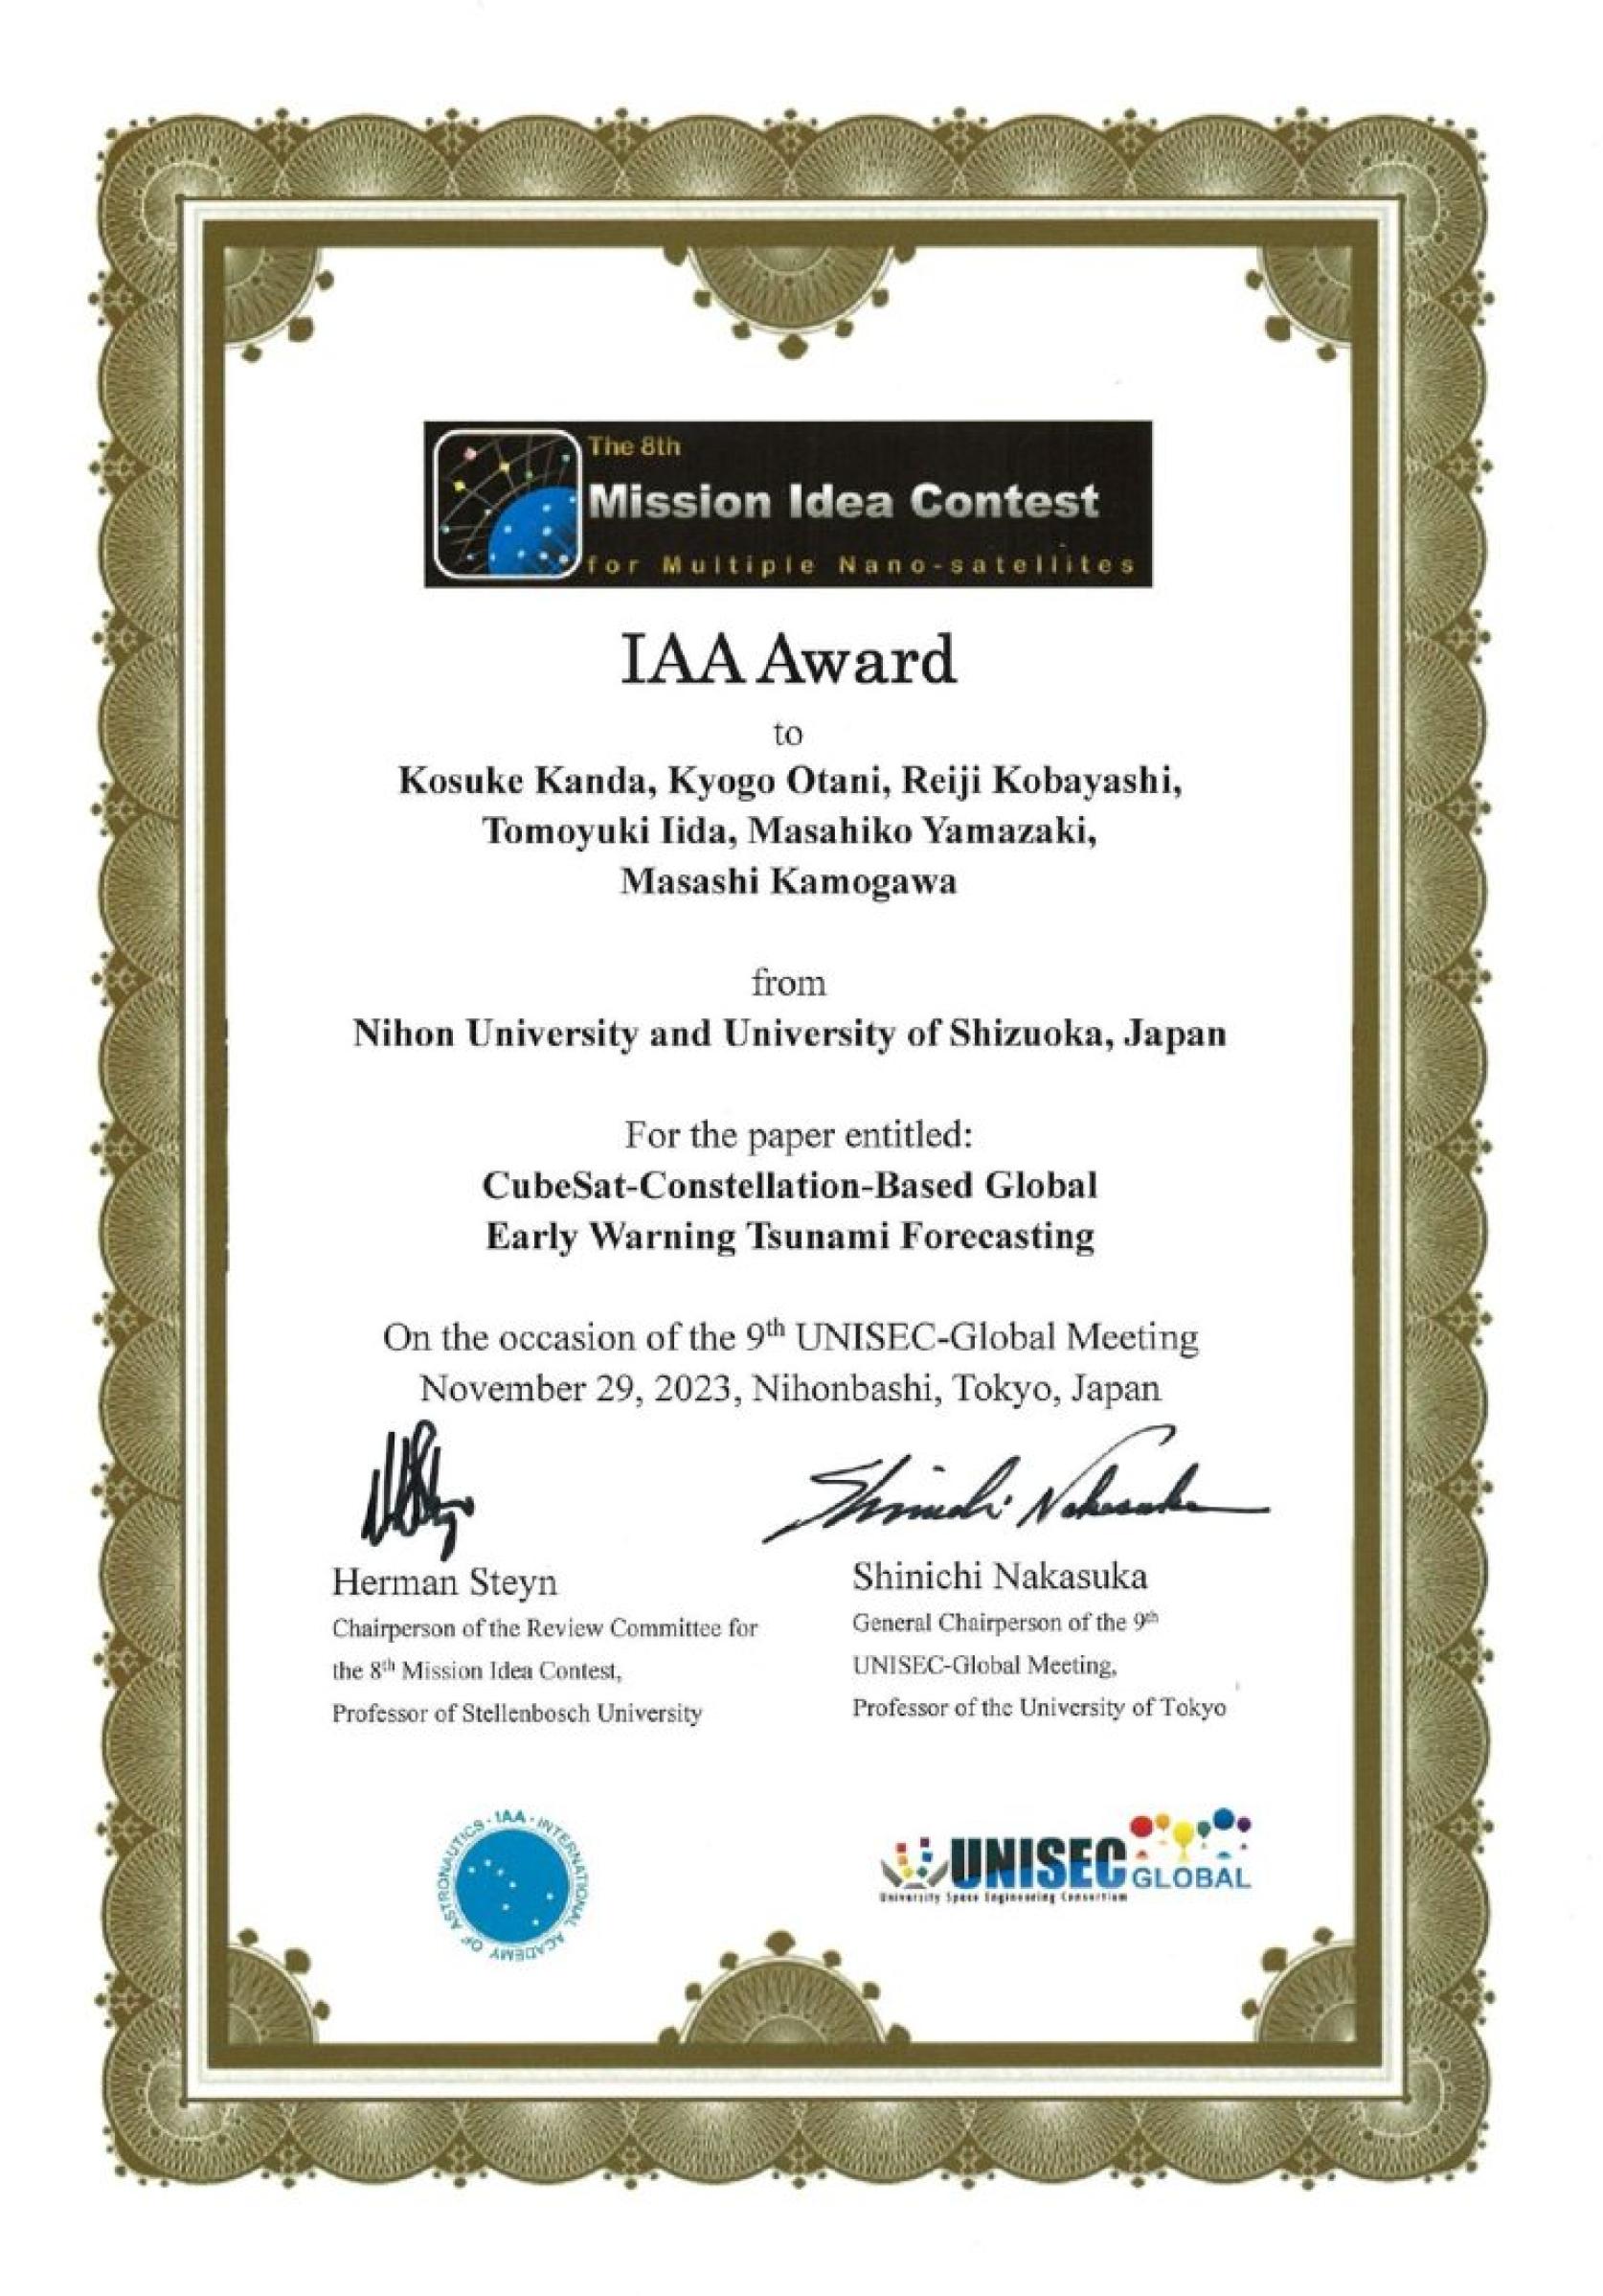 航空宇宙工学科山﨑研究室が「第8回国際超小型衛星ミッションアイディアコンテスト」にて、IAA賞（International Academy of Astronautics）を受賞しました。